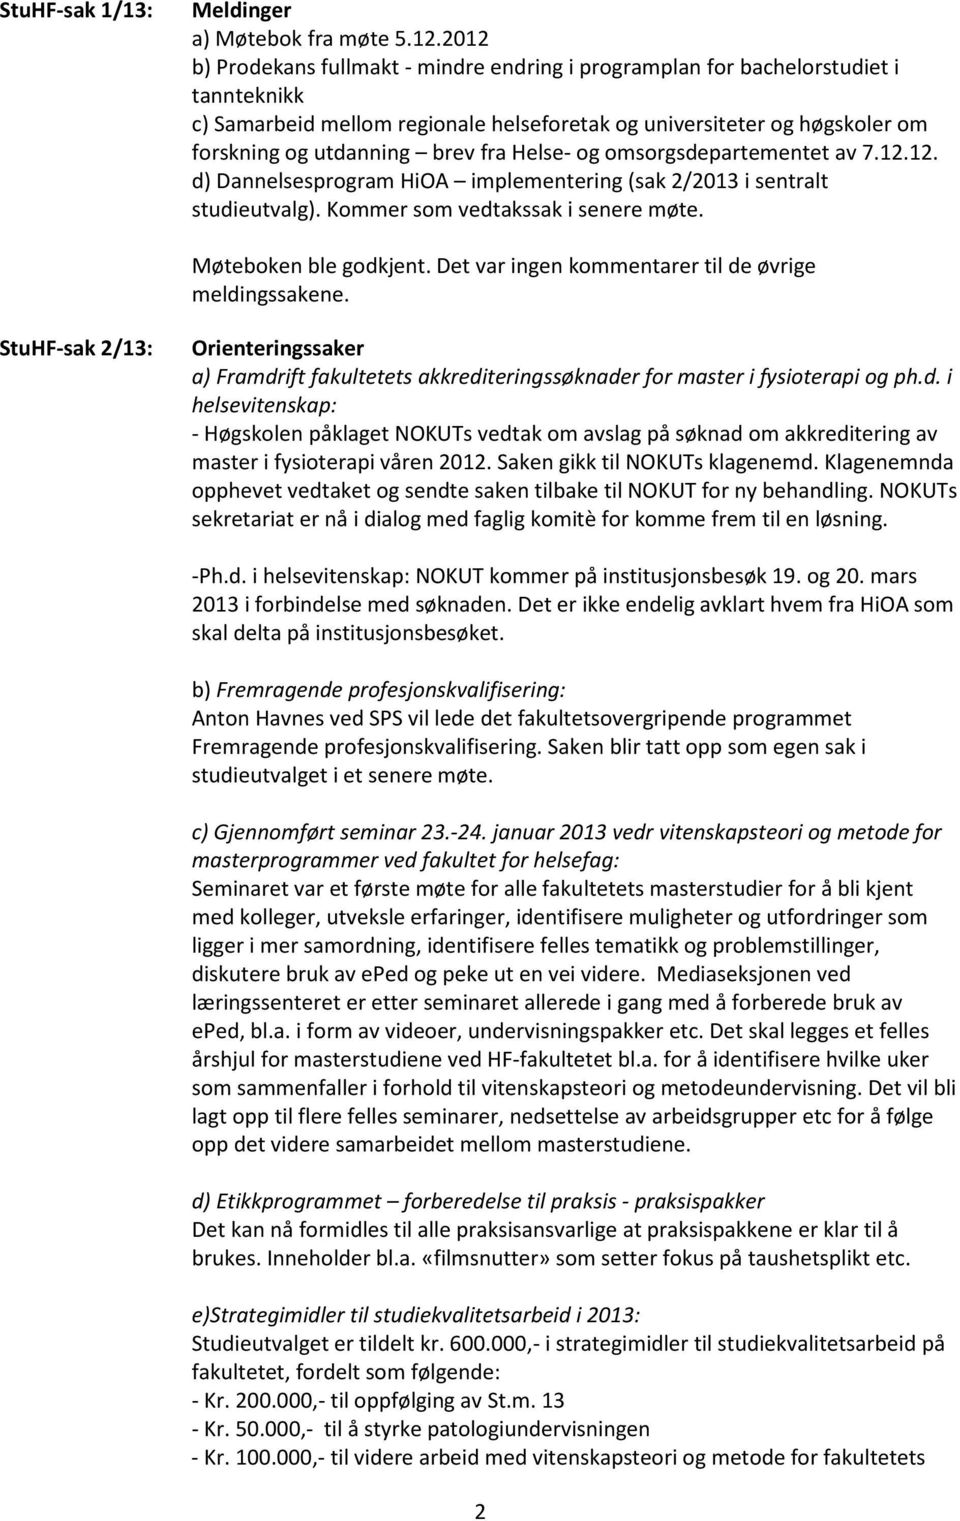 Helse- og omsorgsdepartementet av 7.12.12. d) Dannelsesprogram HiOA implementering (sak 2/2013 i sentralt studieutvalg). Kommer som vedtakssak i senere møte. Møteboken ble godkjent.